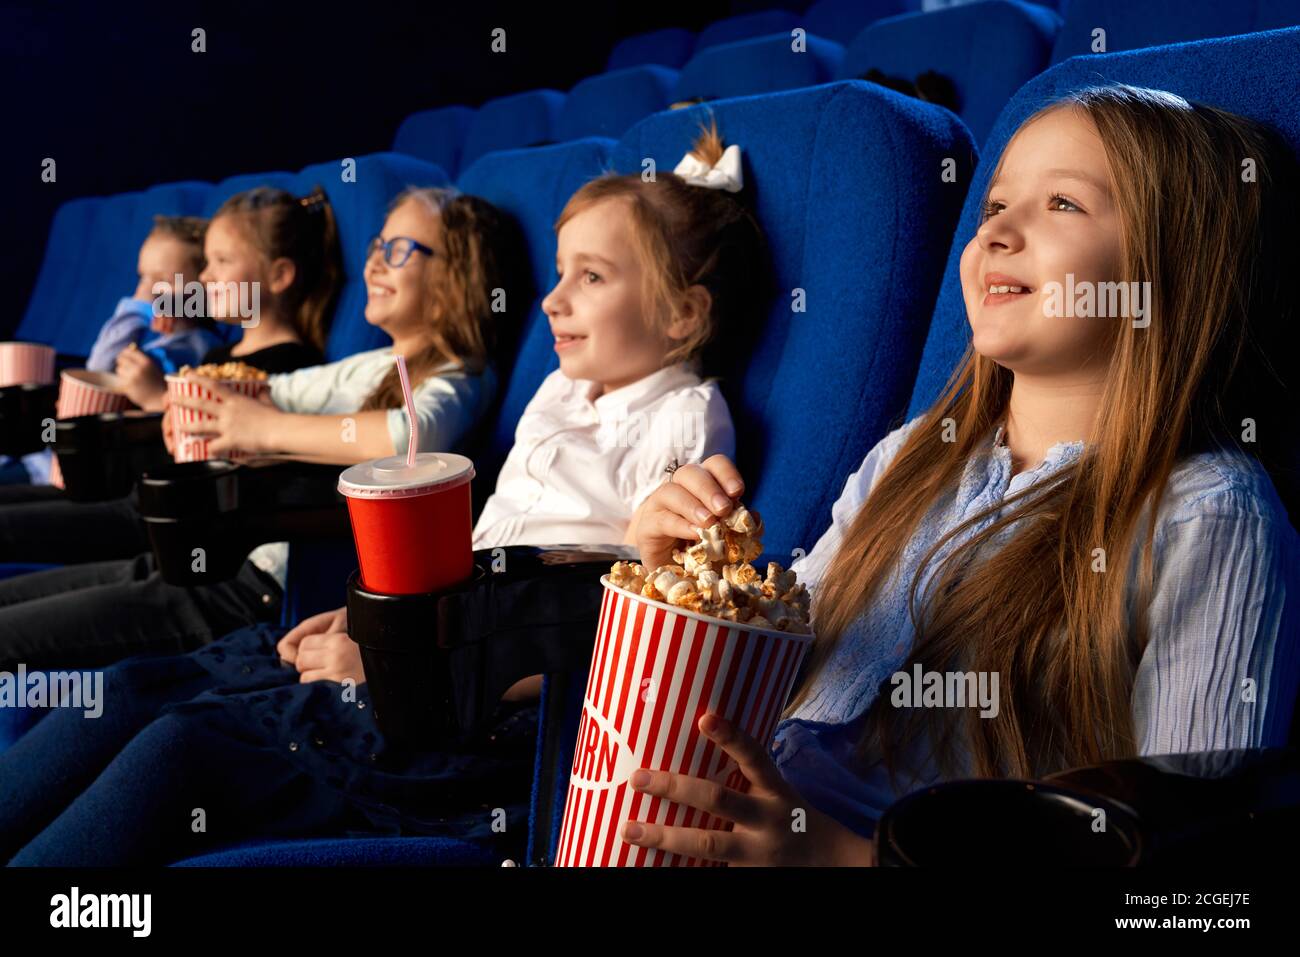 Objectif sélectif de la petite fille souriante tenant le seau à pop-corn, assis avec des amis riant dans des chaises confortables dans le cinéma. Les enfants regardent des dessins animés ou des films, en profitant du temps. Concept de divertissement. Banque D'Images